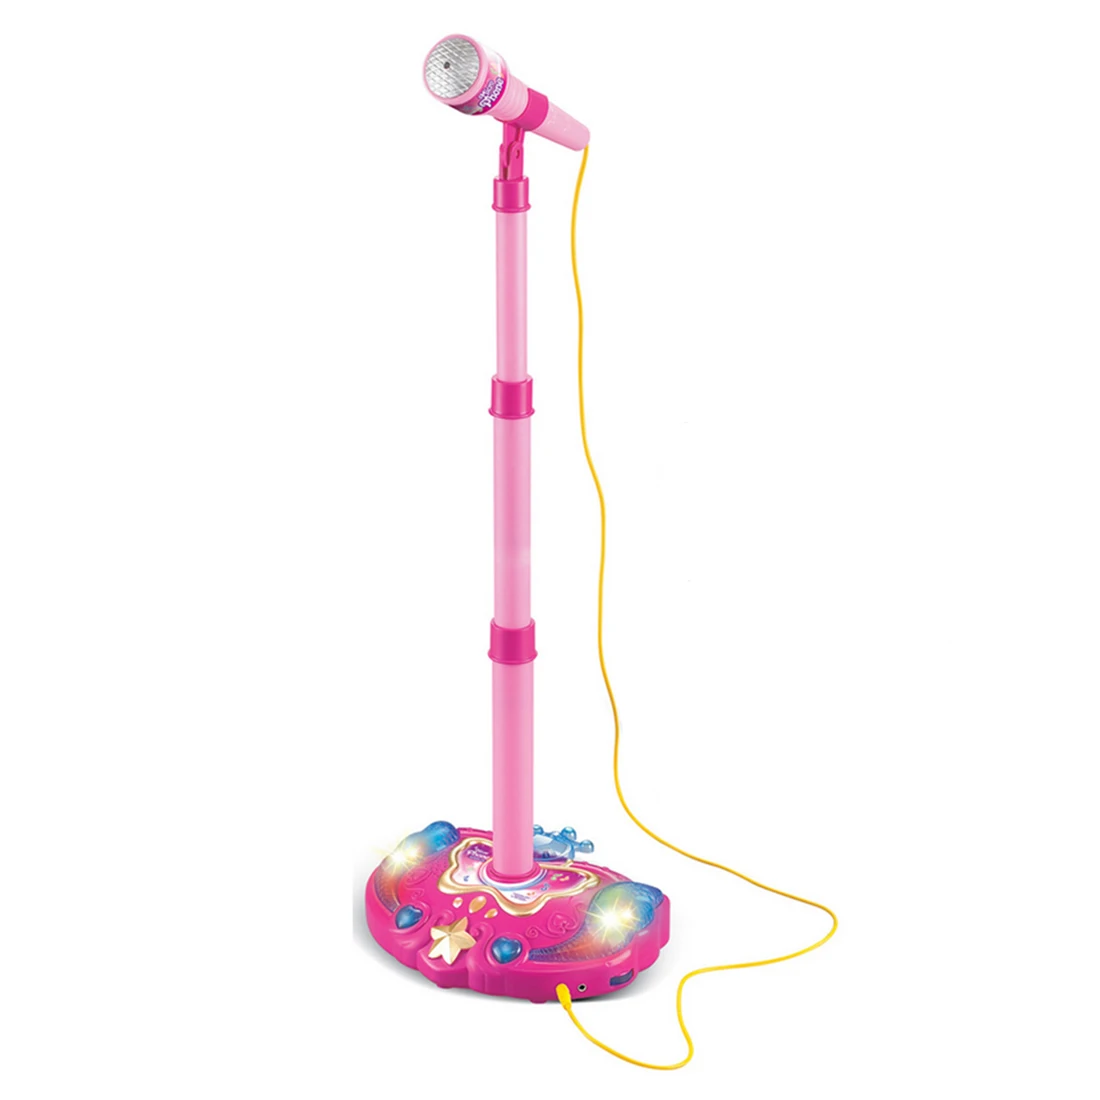 Дети Караоке Регулируемая подставка микрофон музыка микрофон игрушечный музыкальный инструмент игрушка с световым эффектом подарок на год мальчик девочка